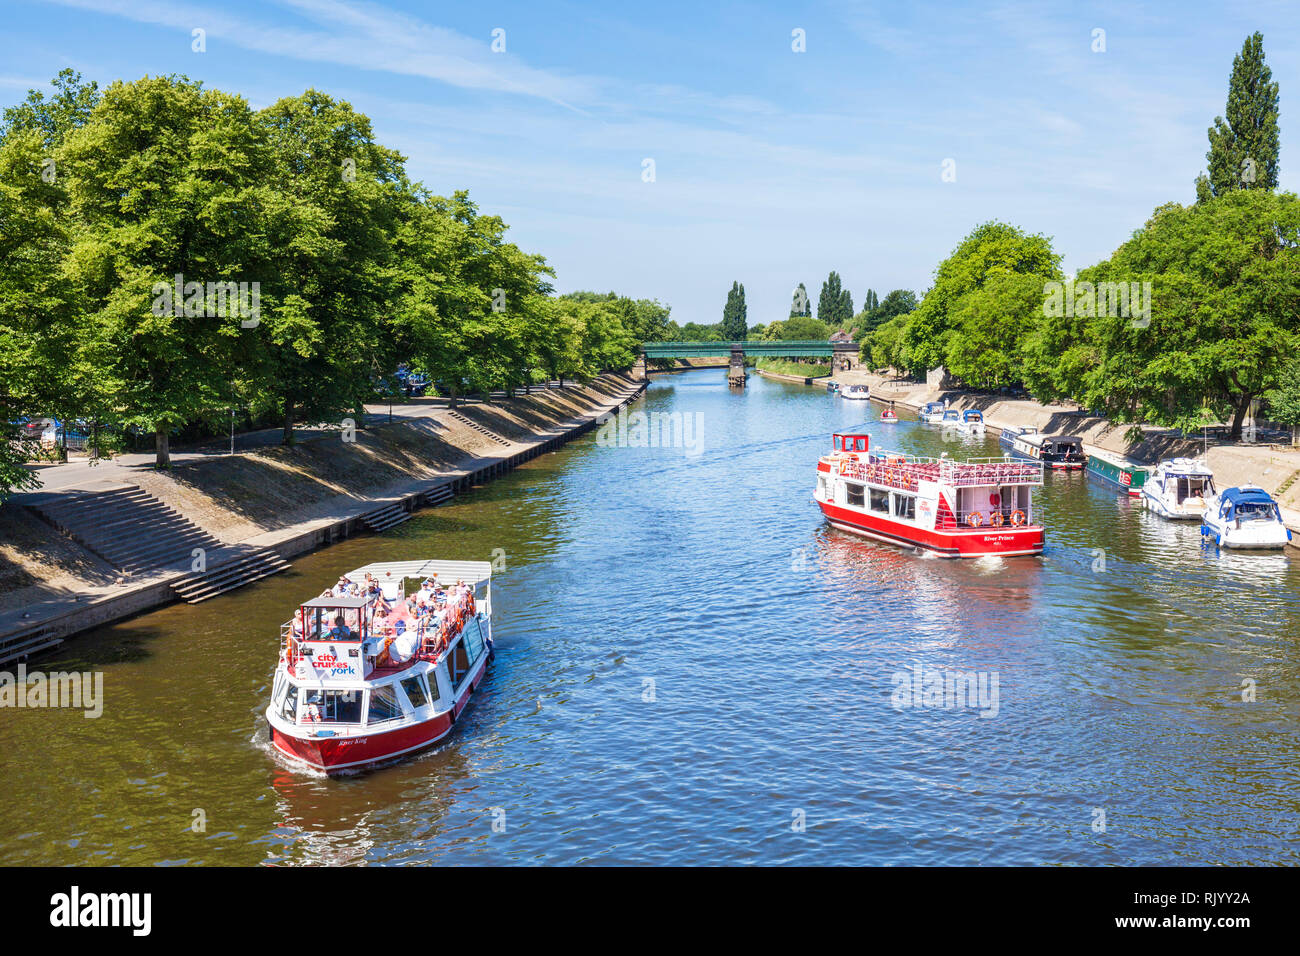 York Fluss Bootsfahrten auf dem Fluss Ouse Stadtzentrum von York North Yorkshire England UK GB EU Europee Stockfoto